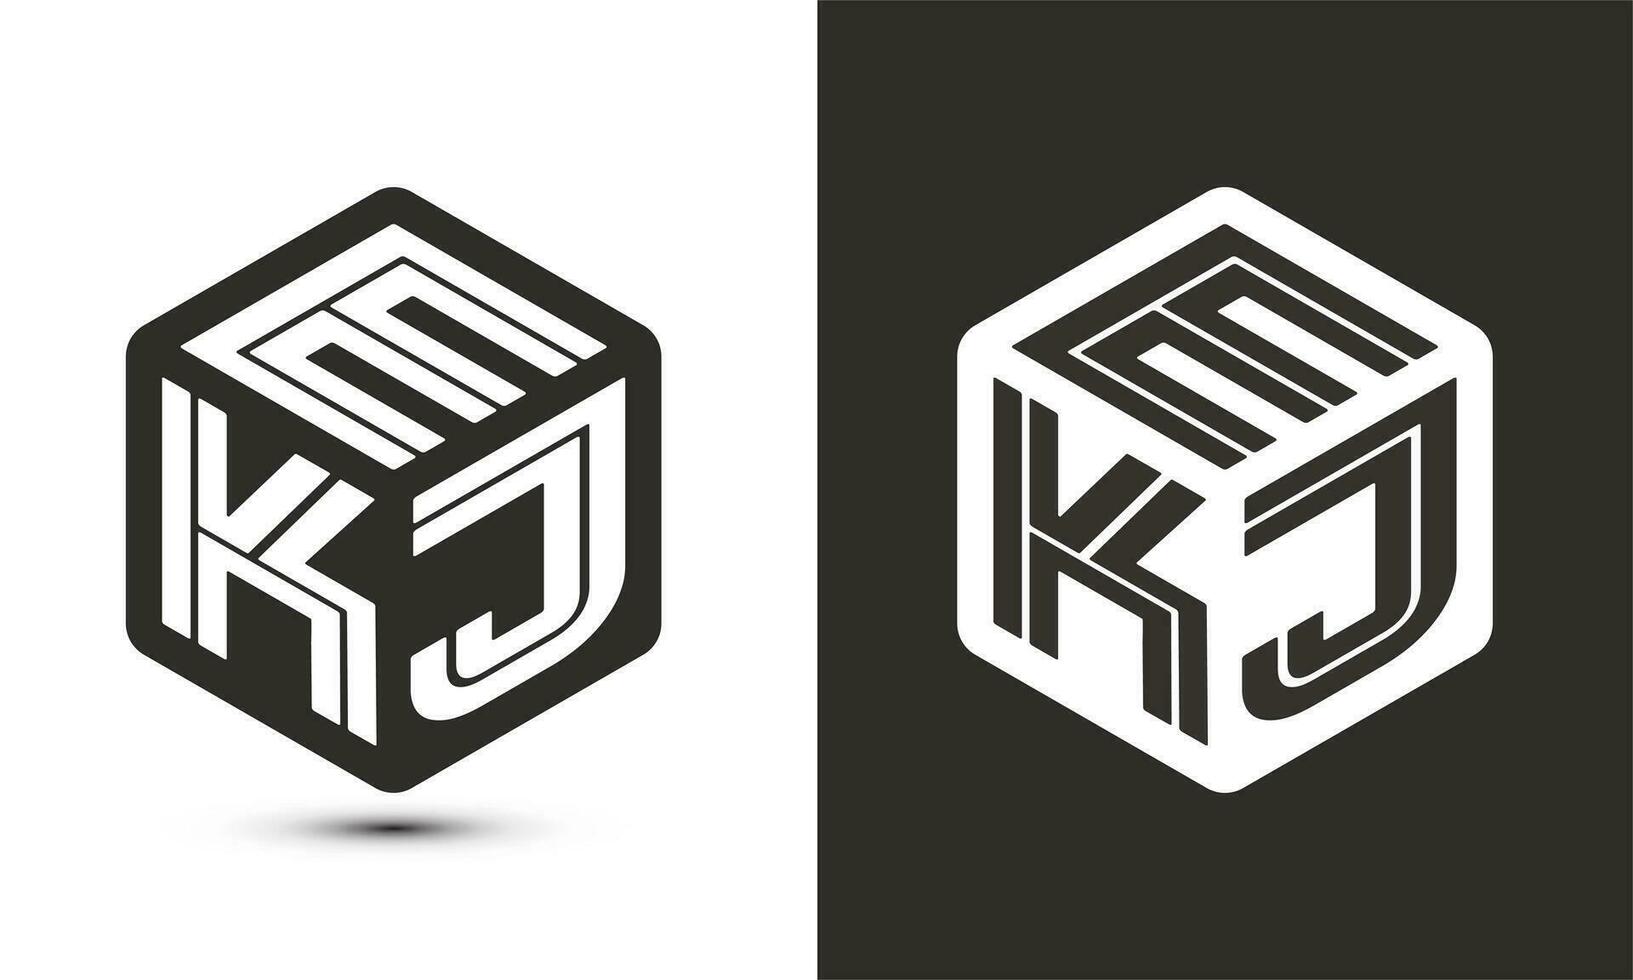 ekj letra logo diseño con ilustrador cubo logo, vector logo moderno alfabeto fuente superposición estilo.